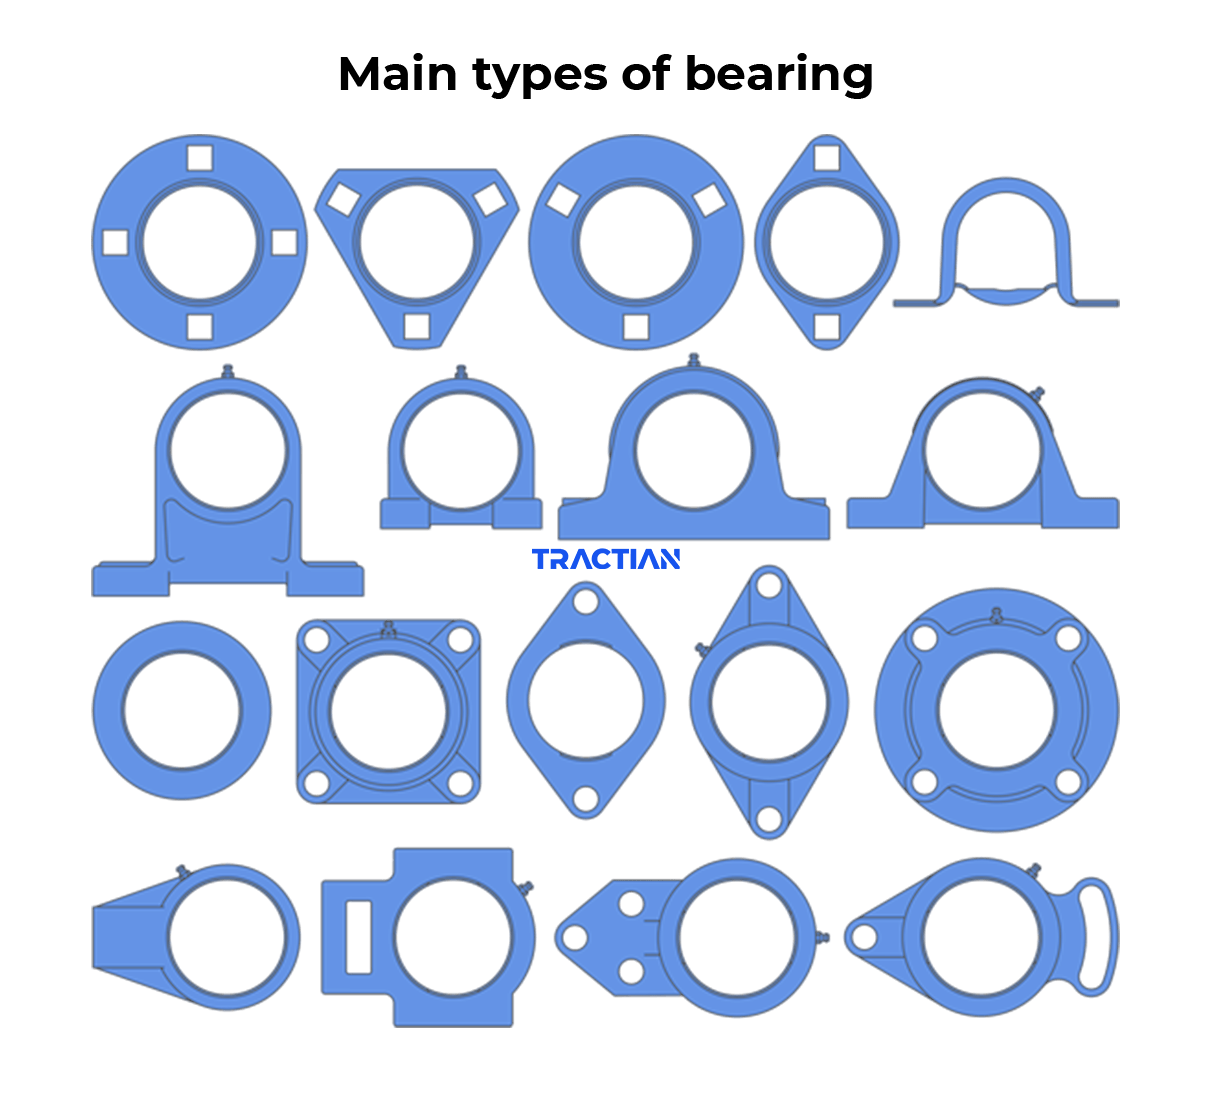 Main types of bearing